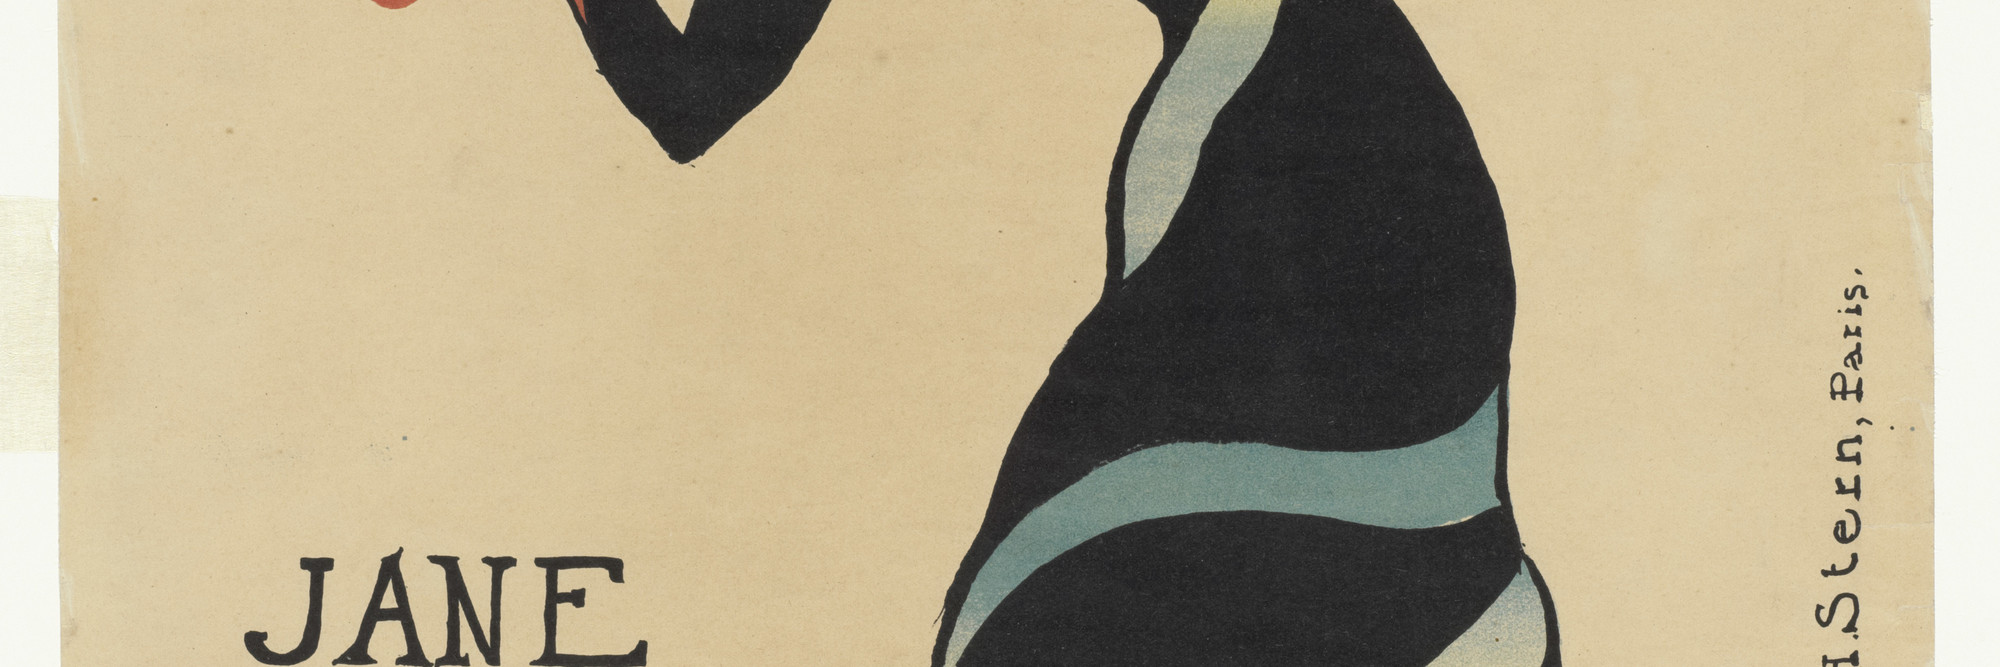 Henri de Toulouse-Lautrec. Jane Avril. 1899. Lithograph, composition: 22 1/16 × 14 1/16″ (56 × 35.7 cm); sheet: 22 1/16 × 15″ (56 × 38.1 cm). Publisher: Jane Avril, Paris. Printer: Henri Stern, Paris. Edition: 25. Gift of Abby Aldrich Rockefeller